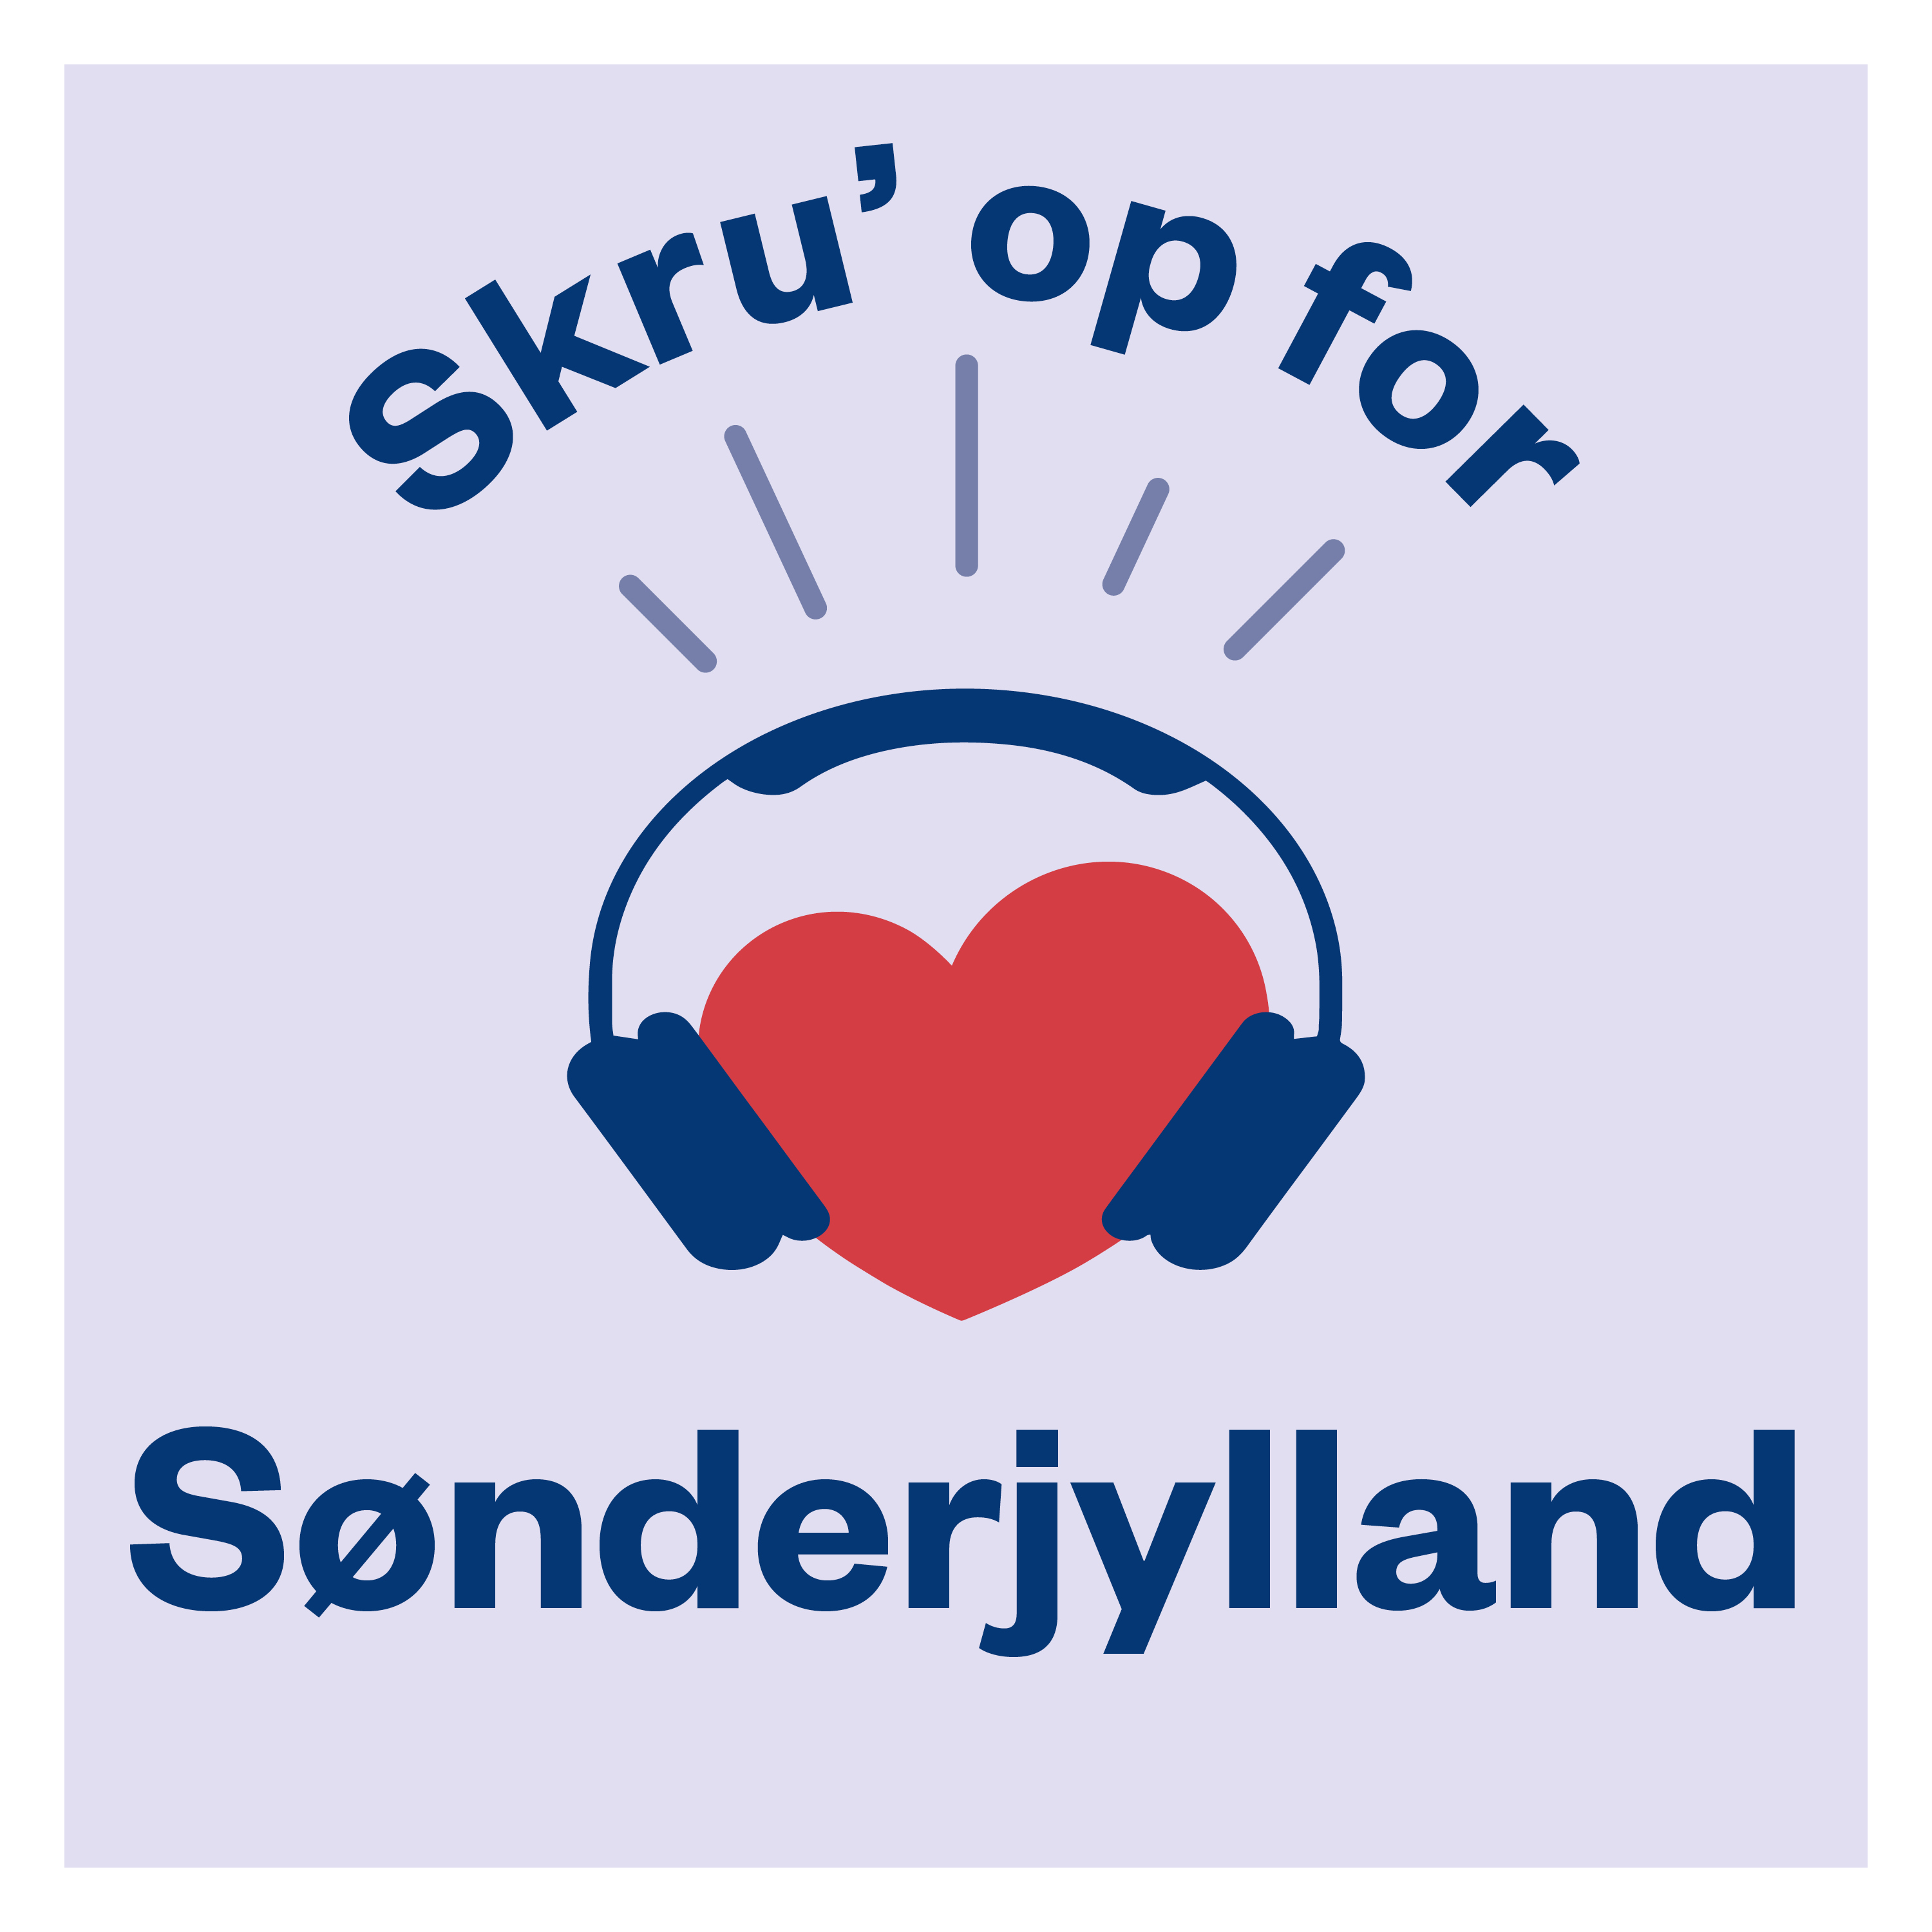 Skru' op for Sønderjylland